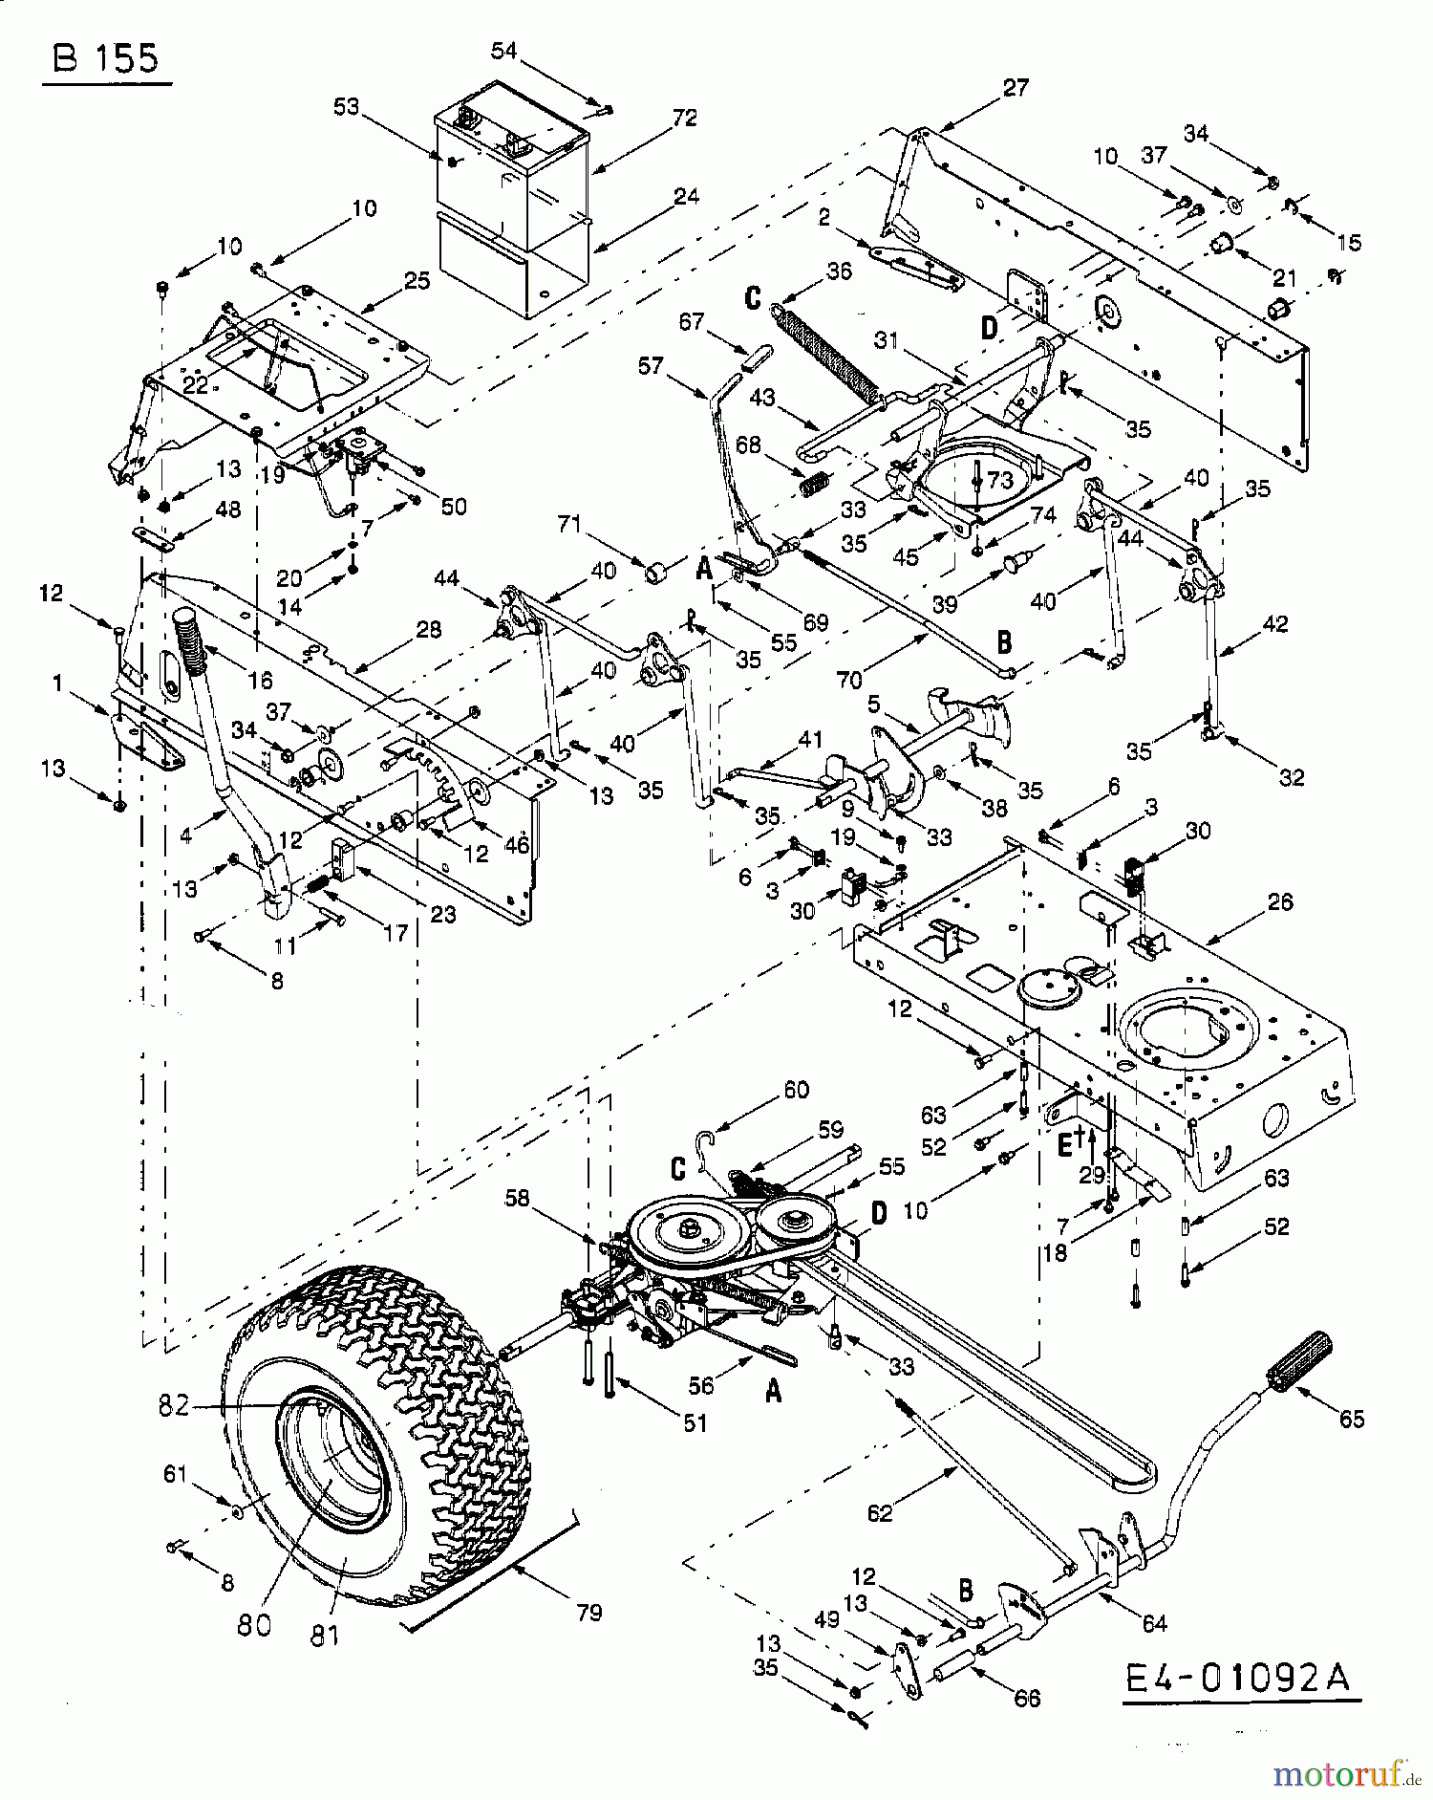  MTD Lawn tractors B 155 13AA688G678  (2003) Drive system, Pedals, Rear wheels